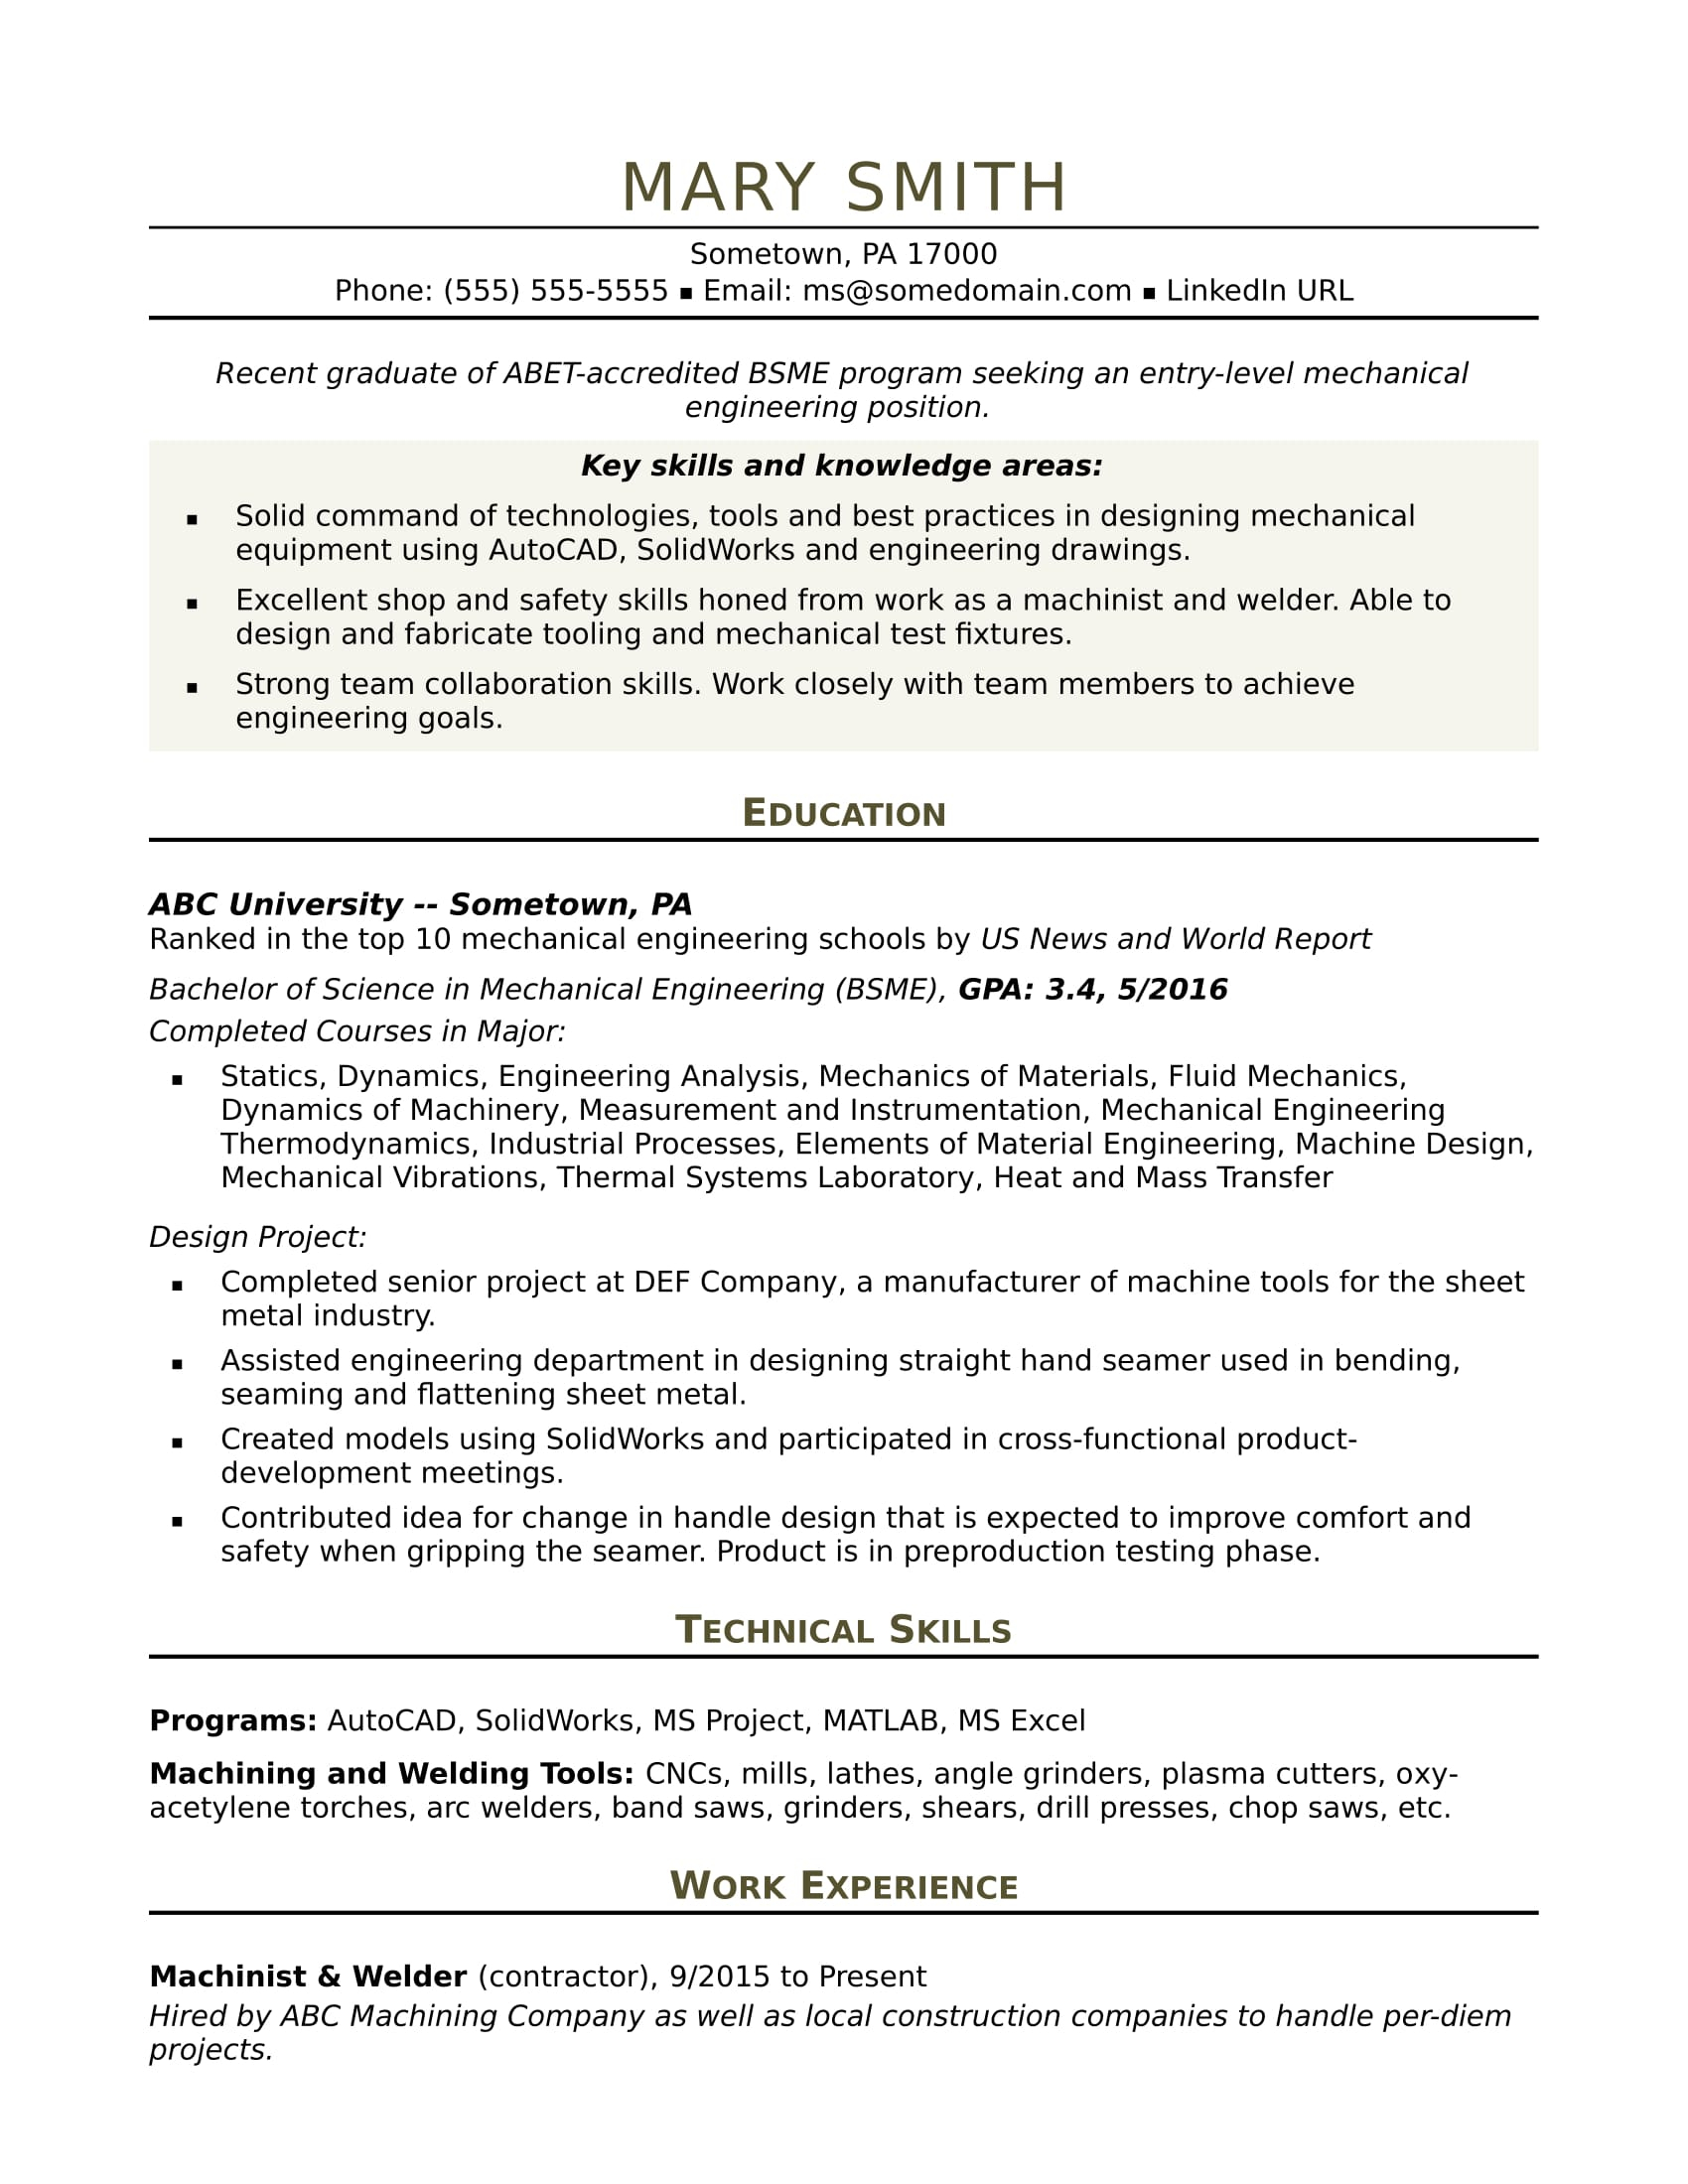 Basic Resume Template Sample Resume For An Entry Level Mechanical Engineer Monster